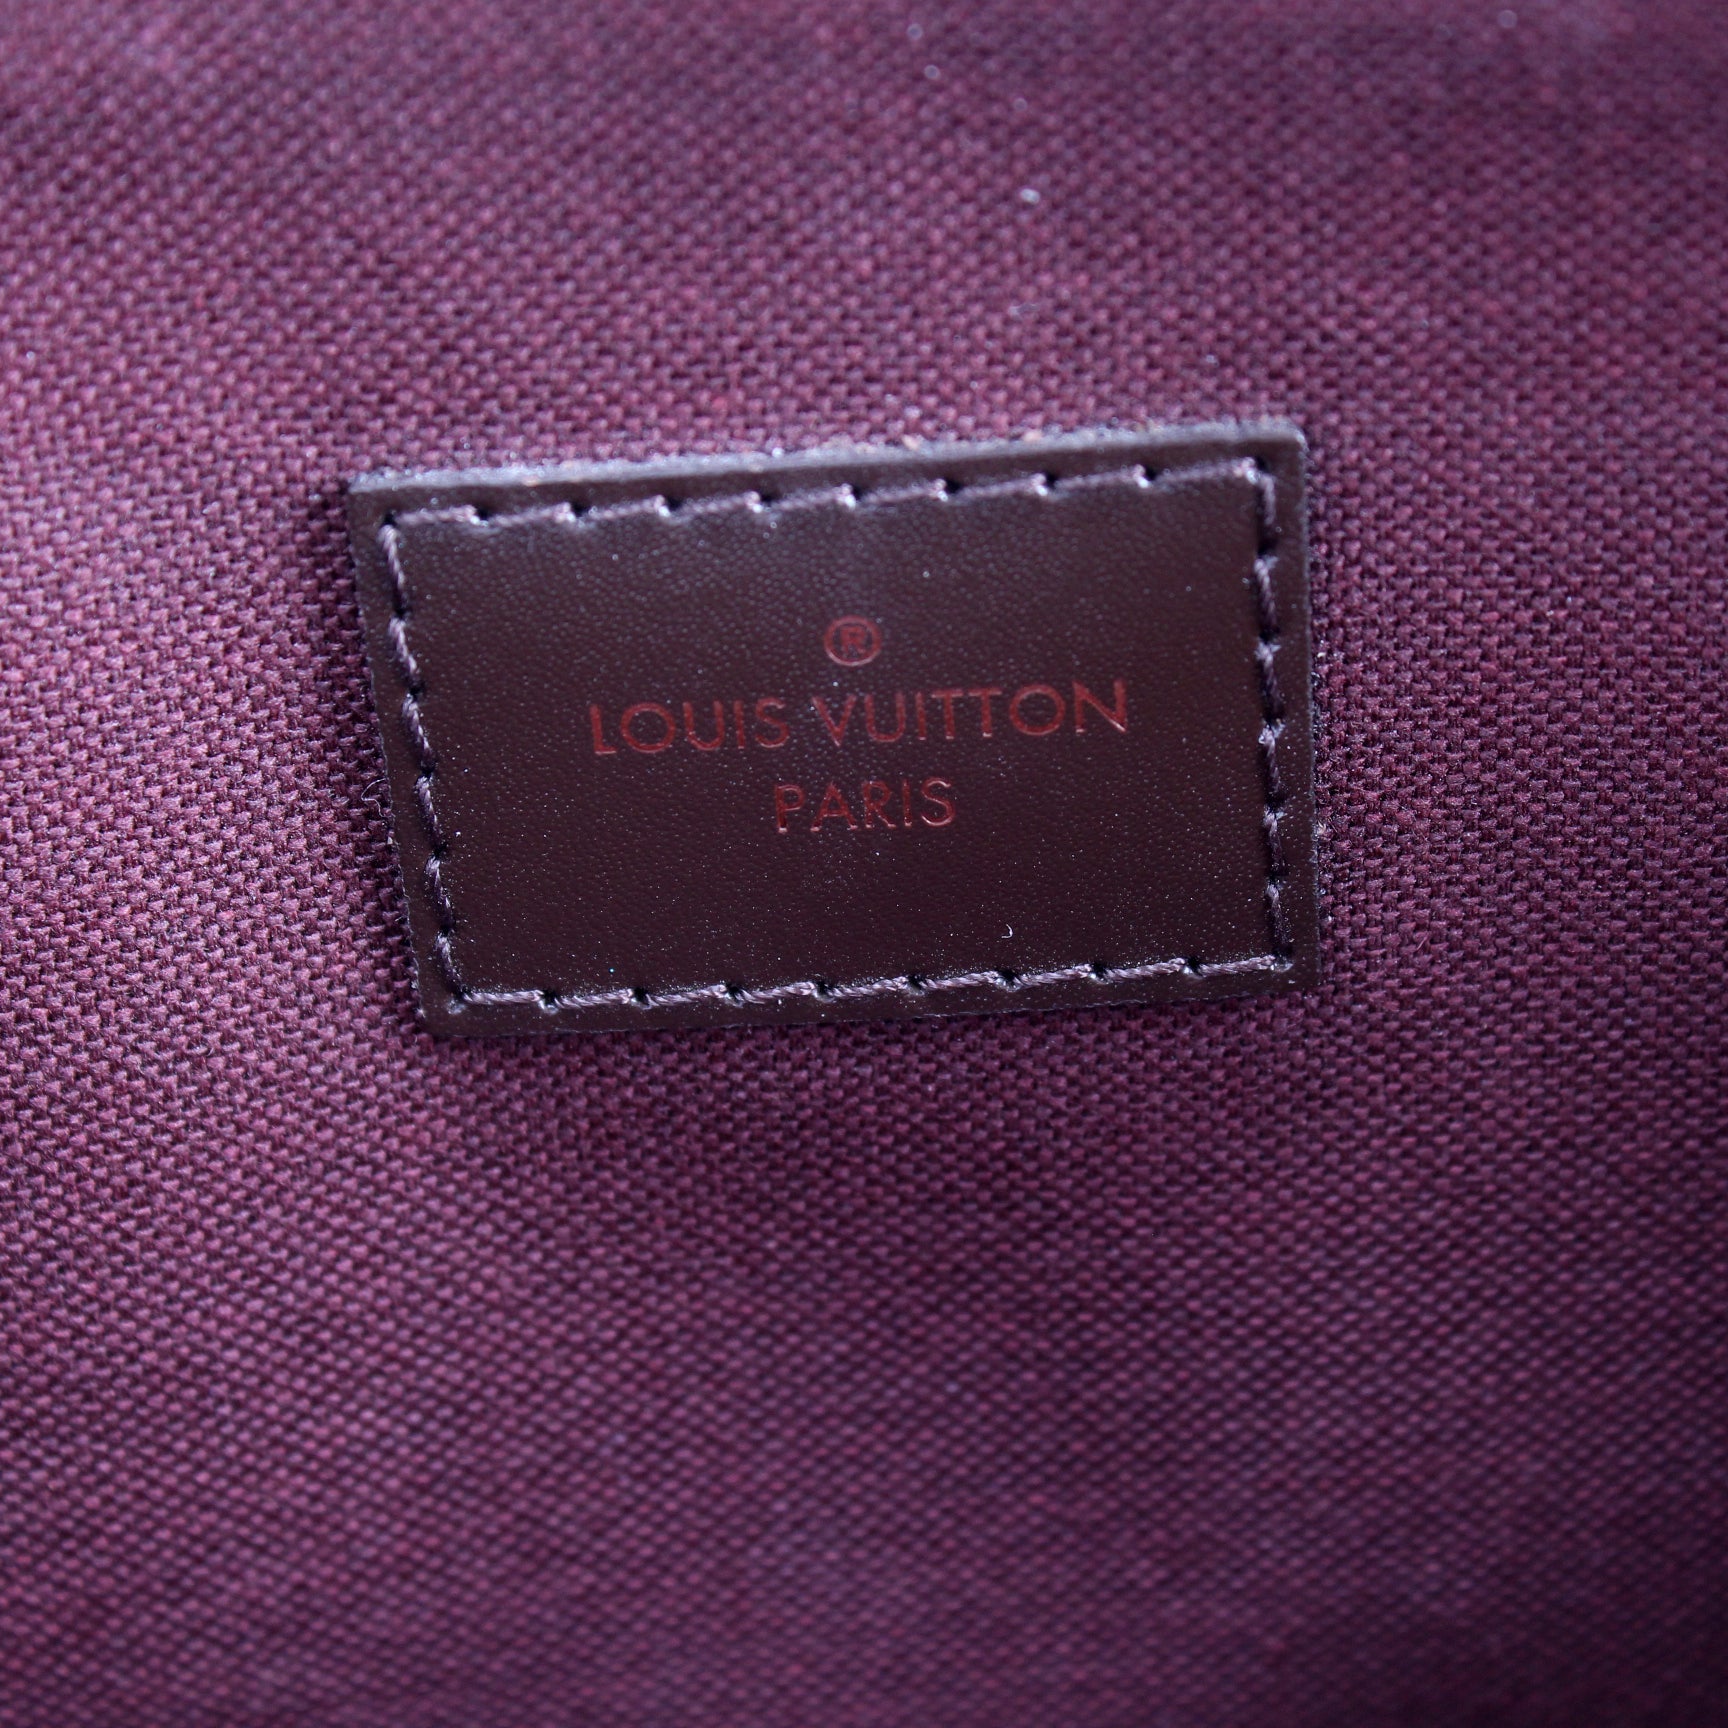 Louis Vuitton Hoxton PM Bag Review 